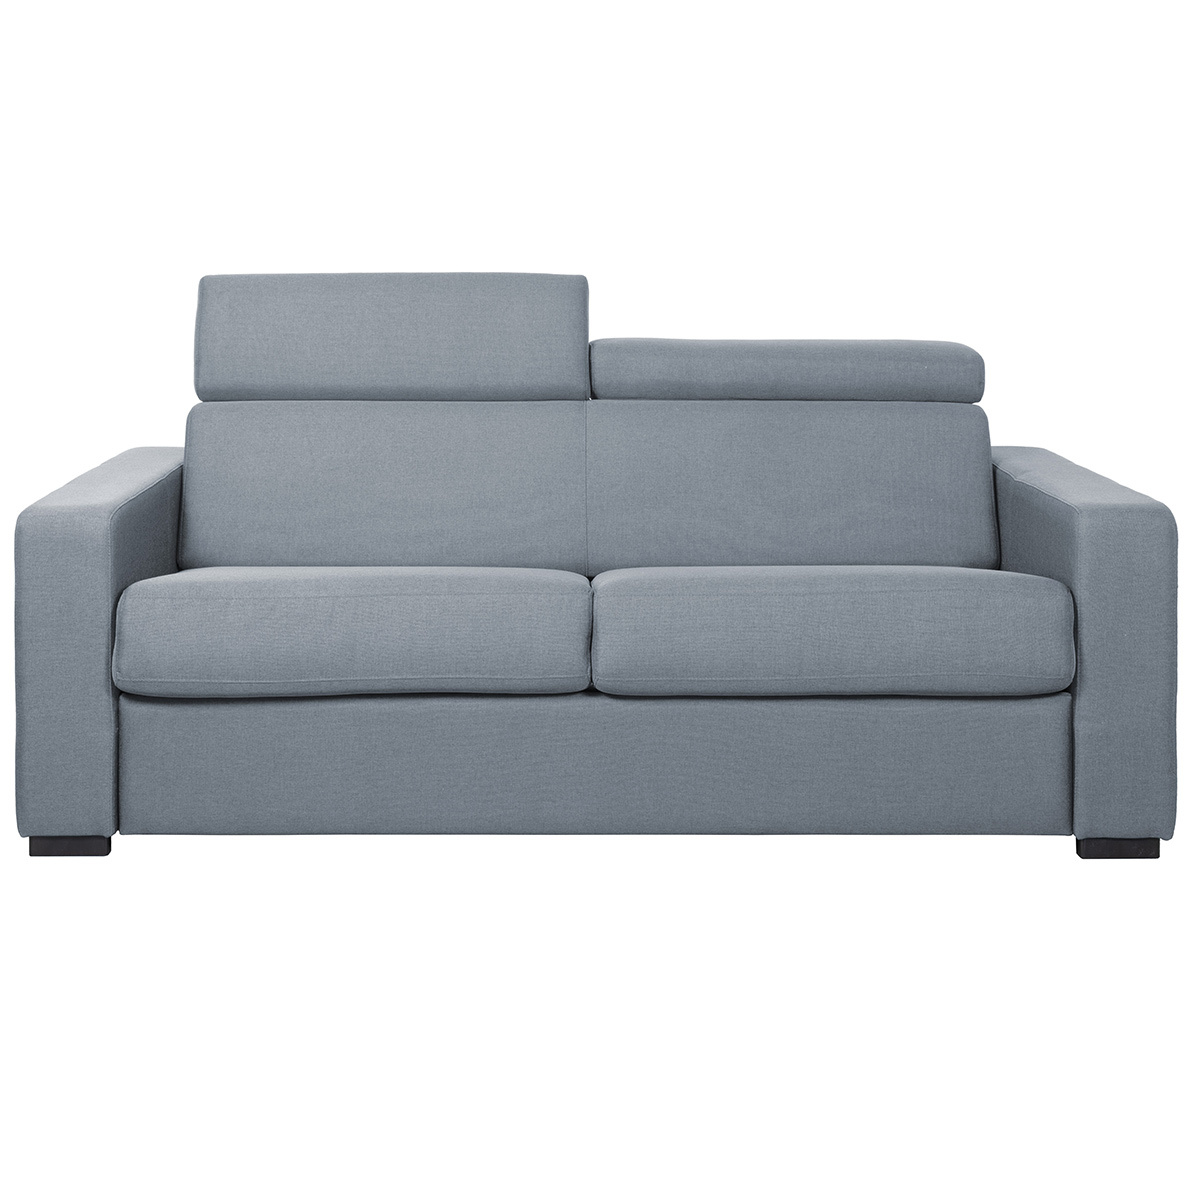 Canapé convertible avec têtières ajustables 3 places en tissu gris clair avec matelas 12 cm NORO vue1